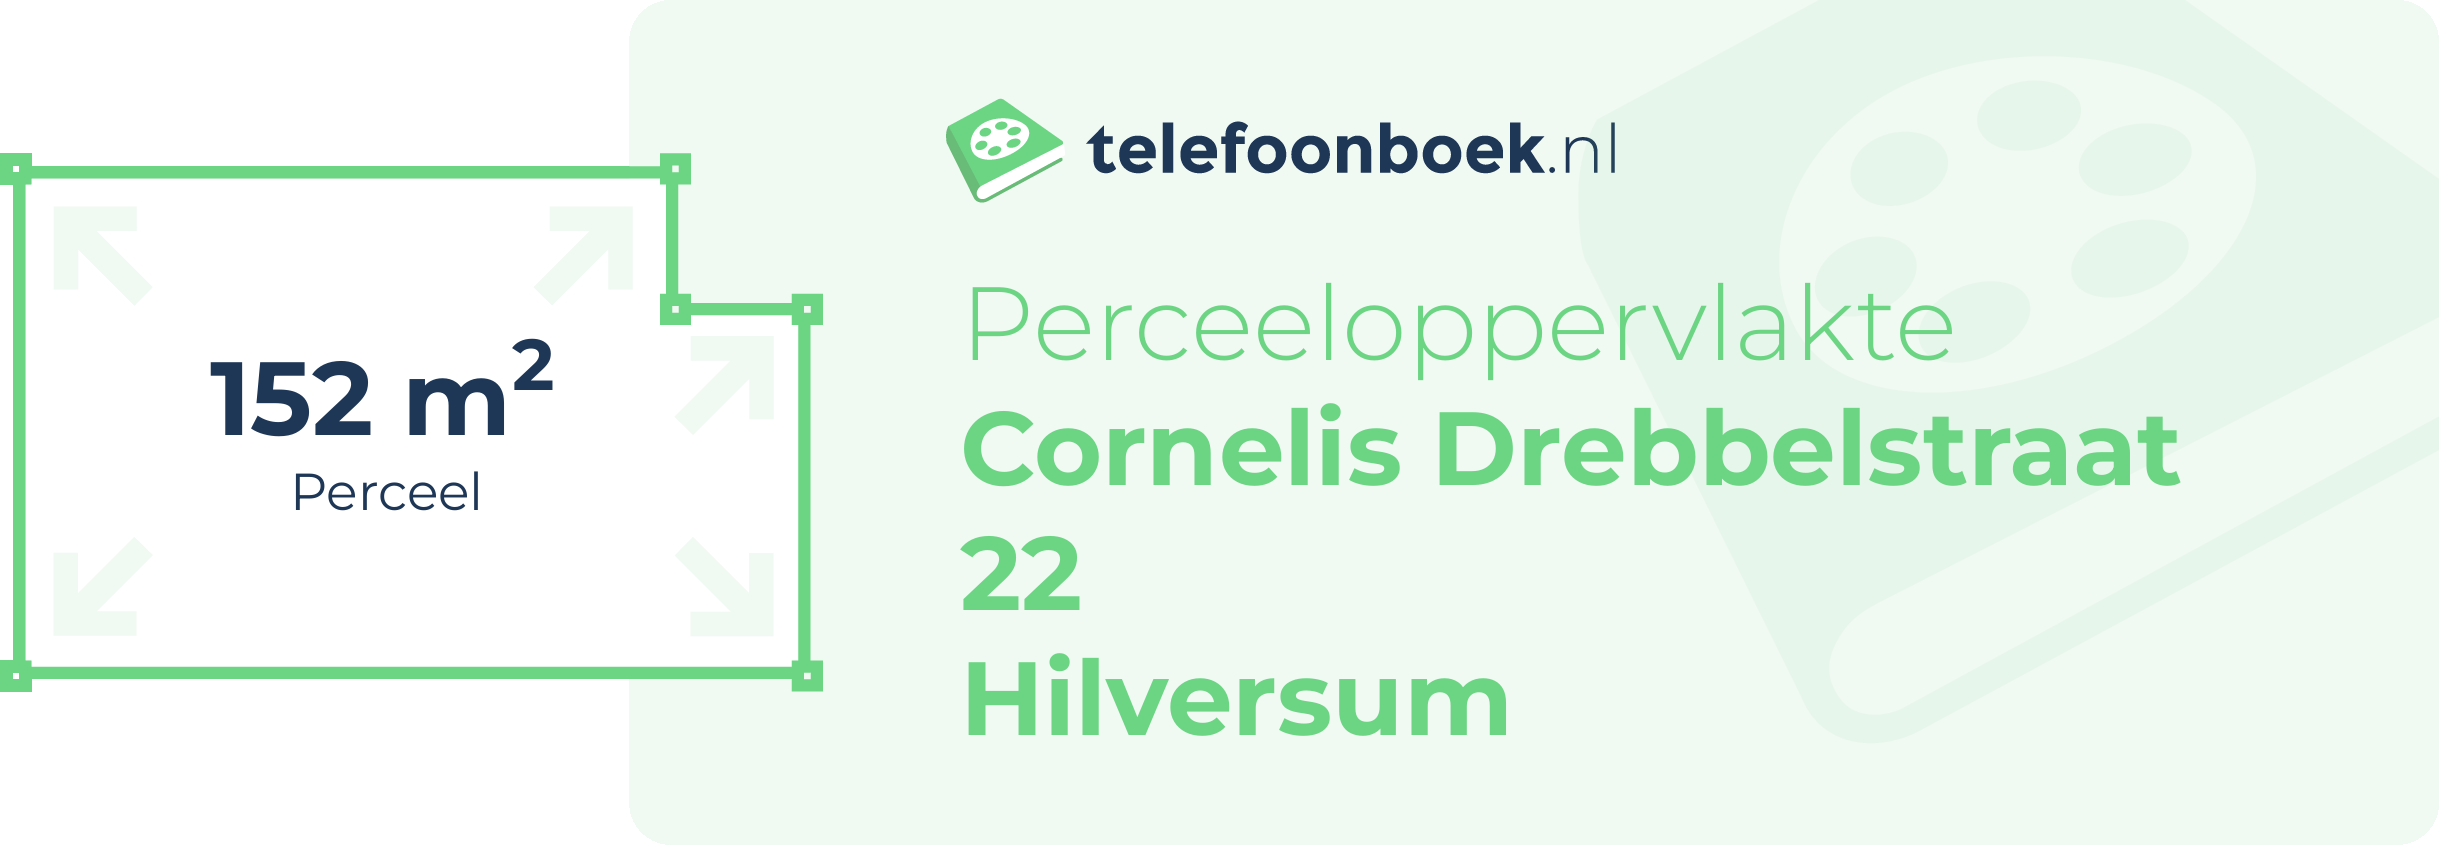 Perceeloppervlakte Cornelis Drebbelstraat 22 Hilversum